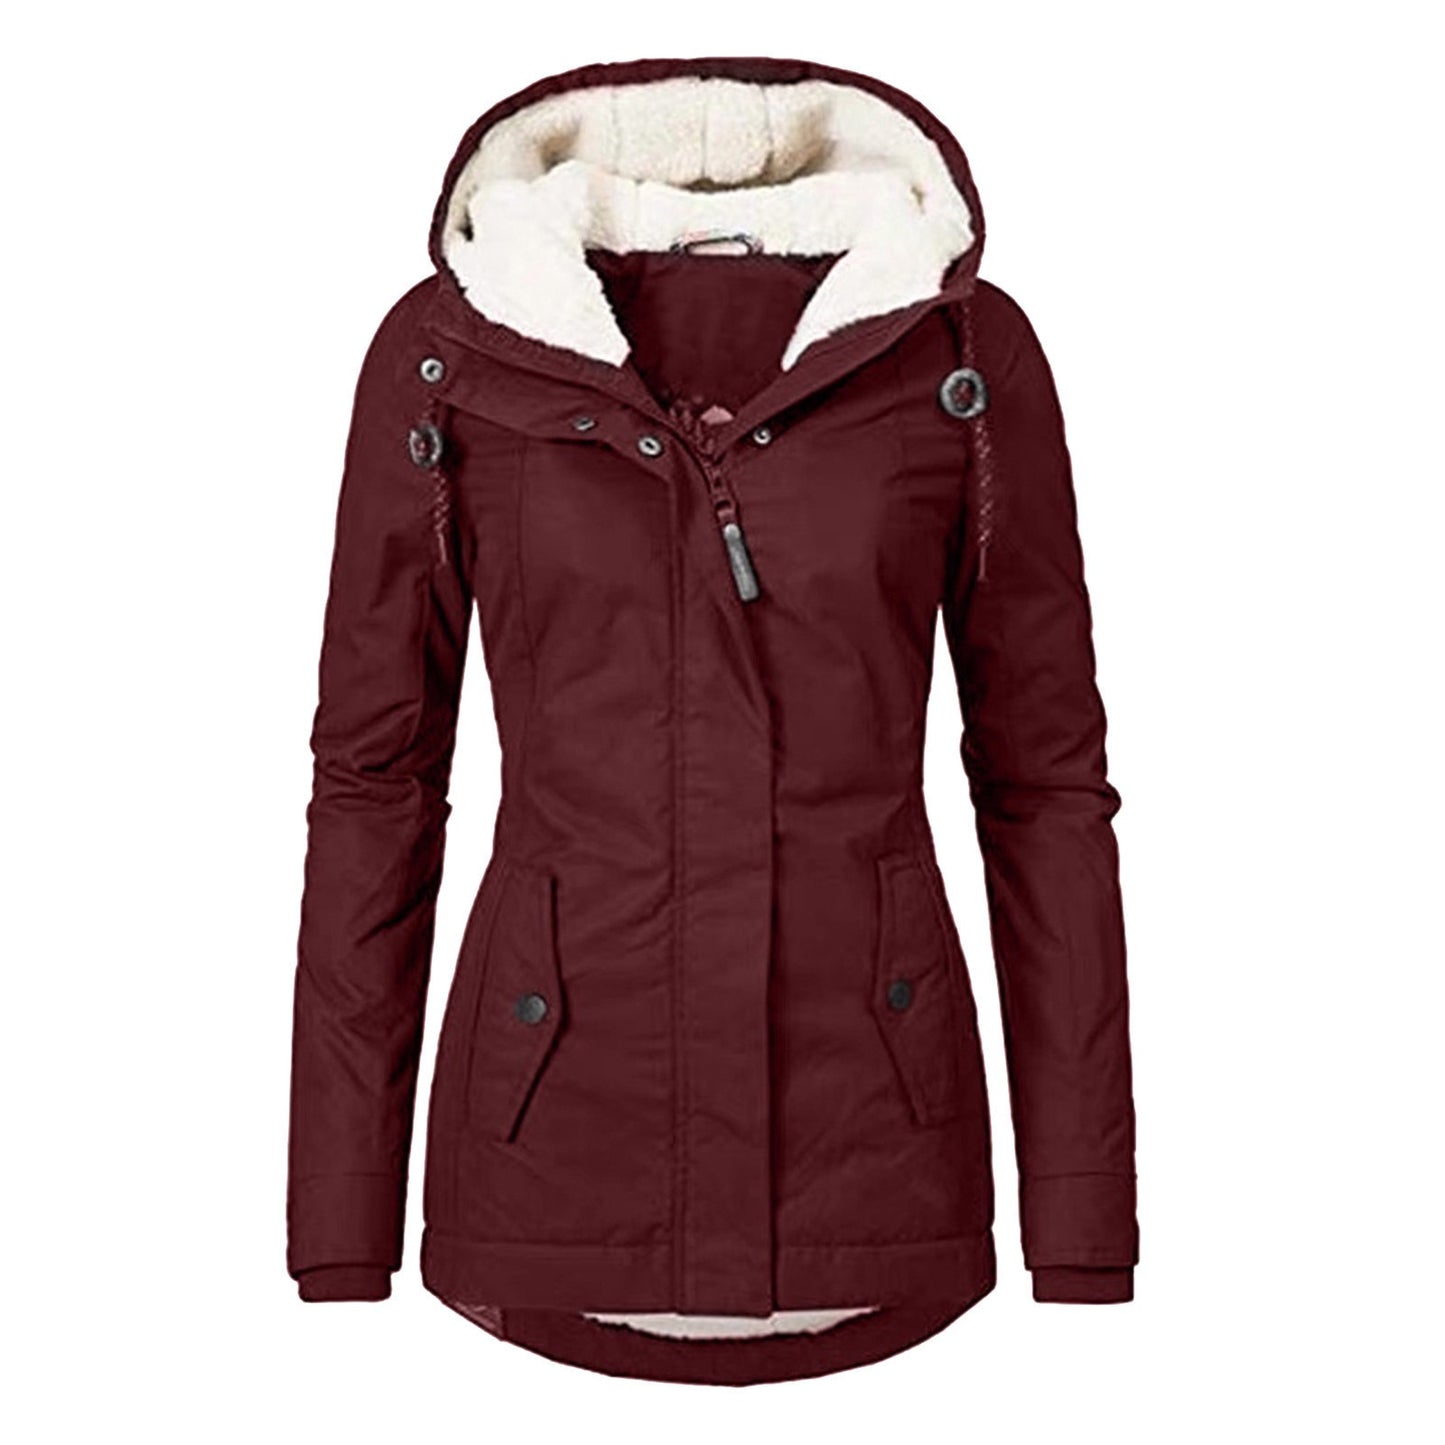 Women's Fall Winter Long Coat Windproof Warm 3 in 1 Loose Casual Sports Jacket Zipper Waterpoof Down Parkas